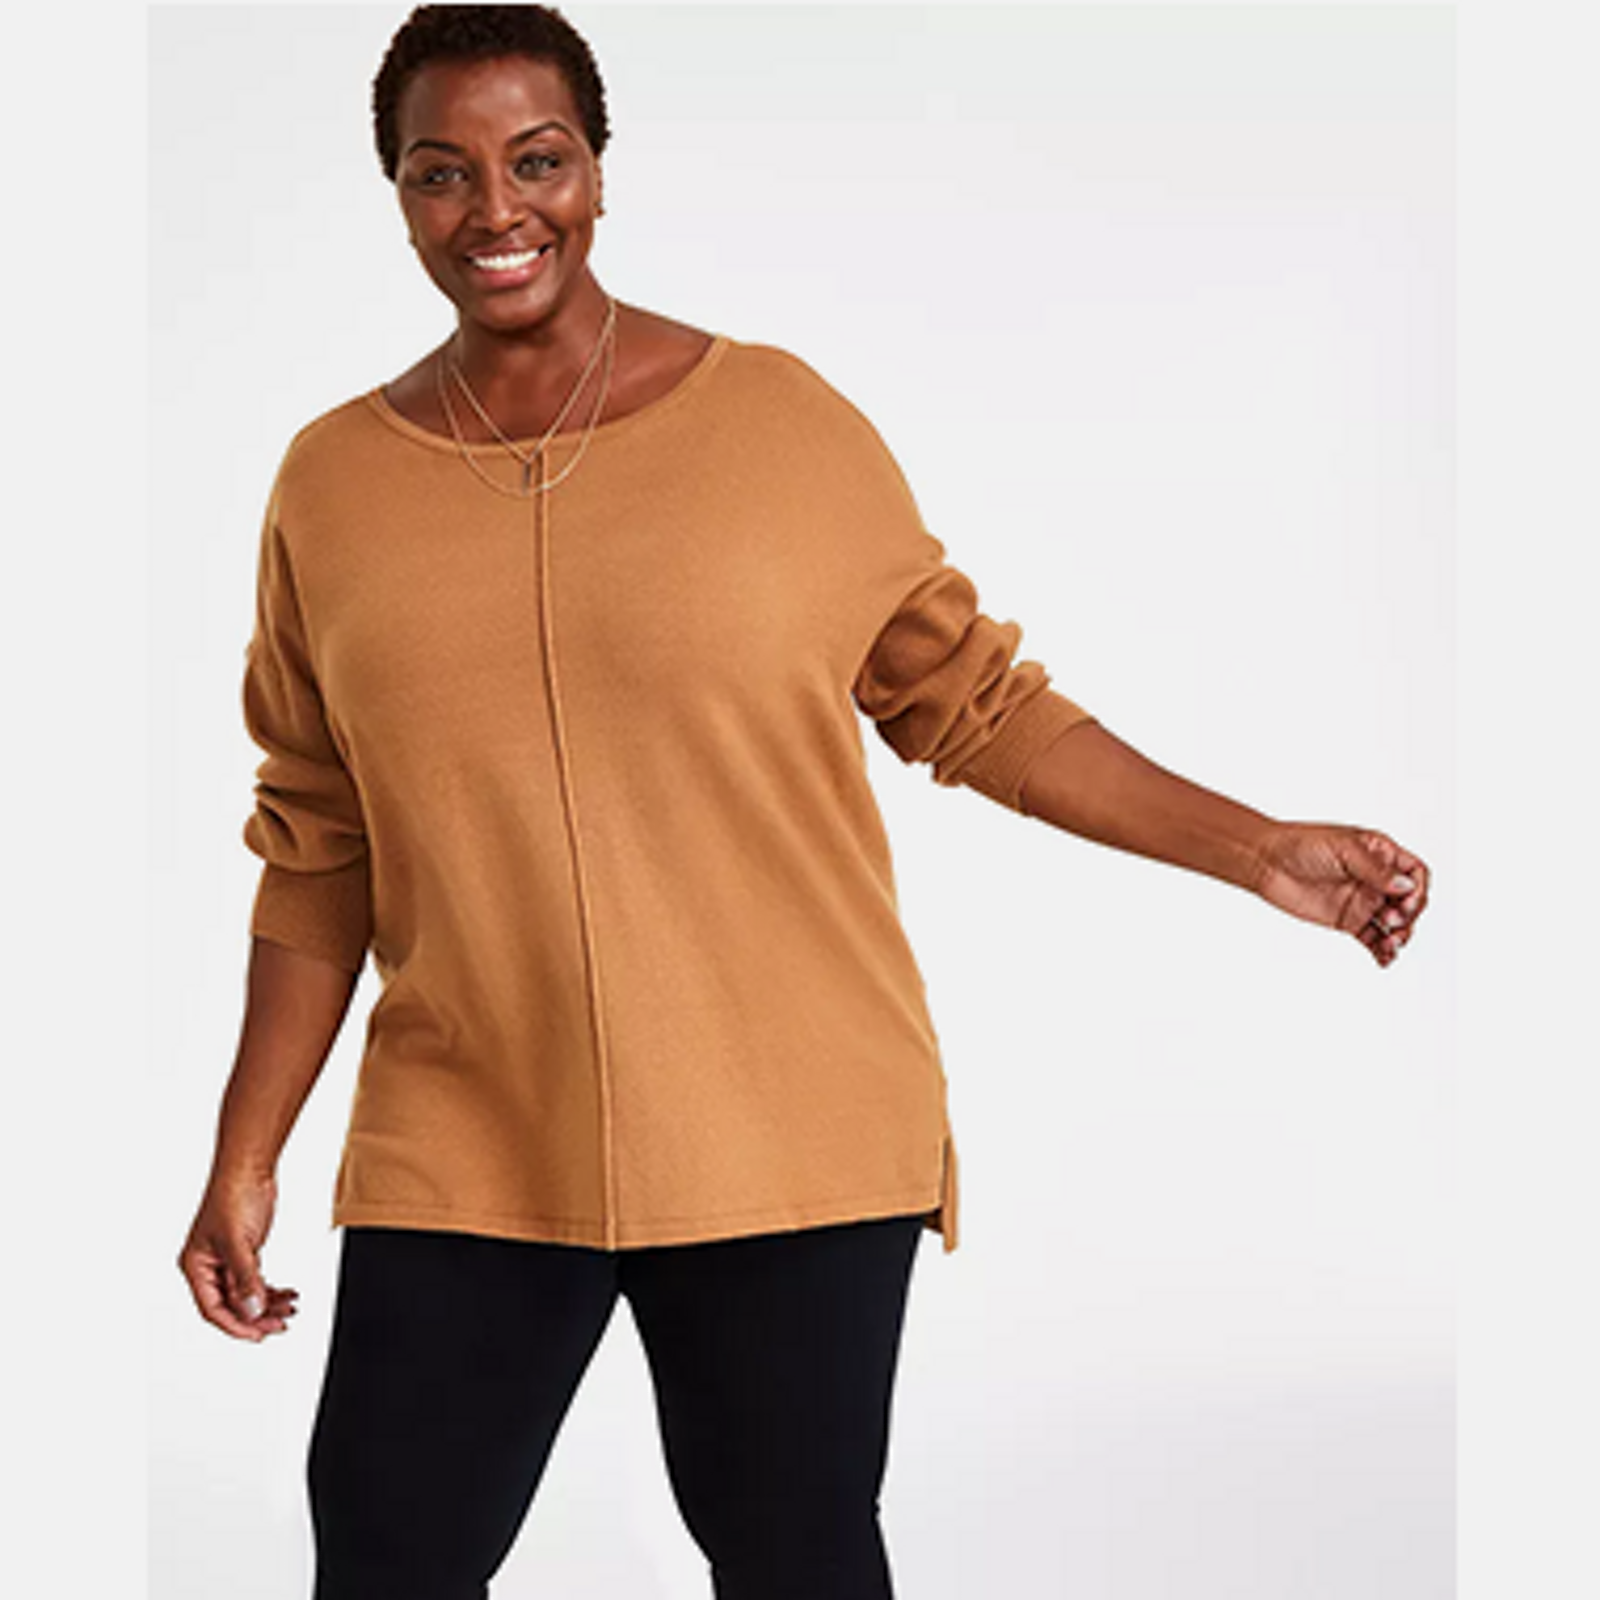 Oversized Sweaters for Women - Macy's